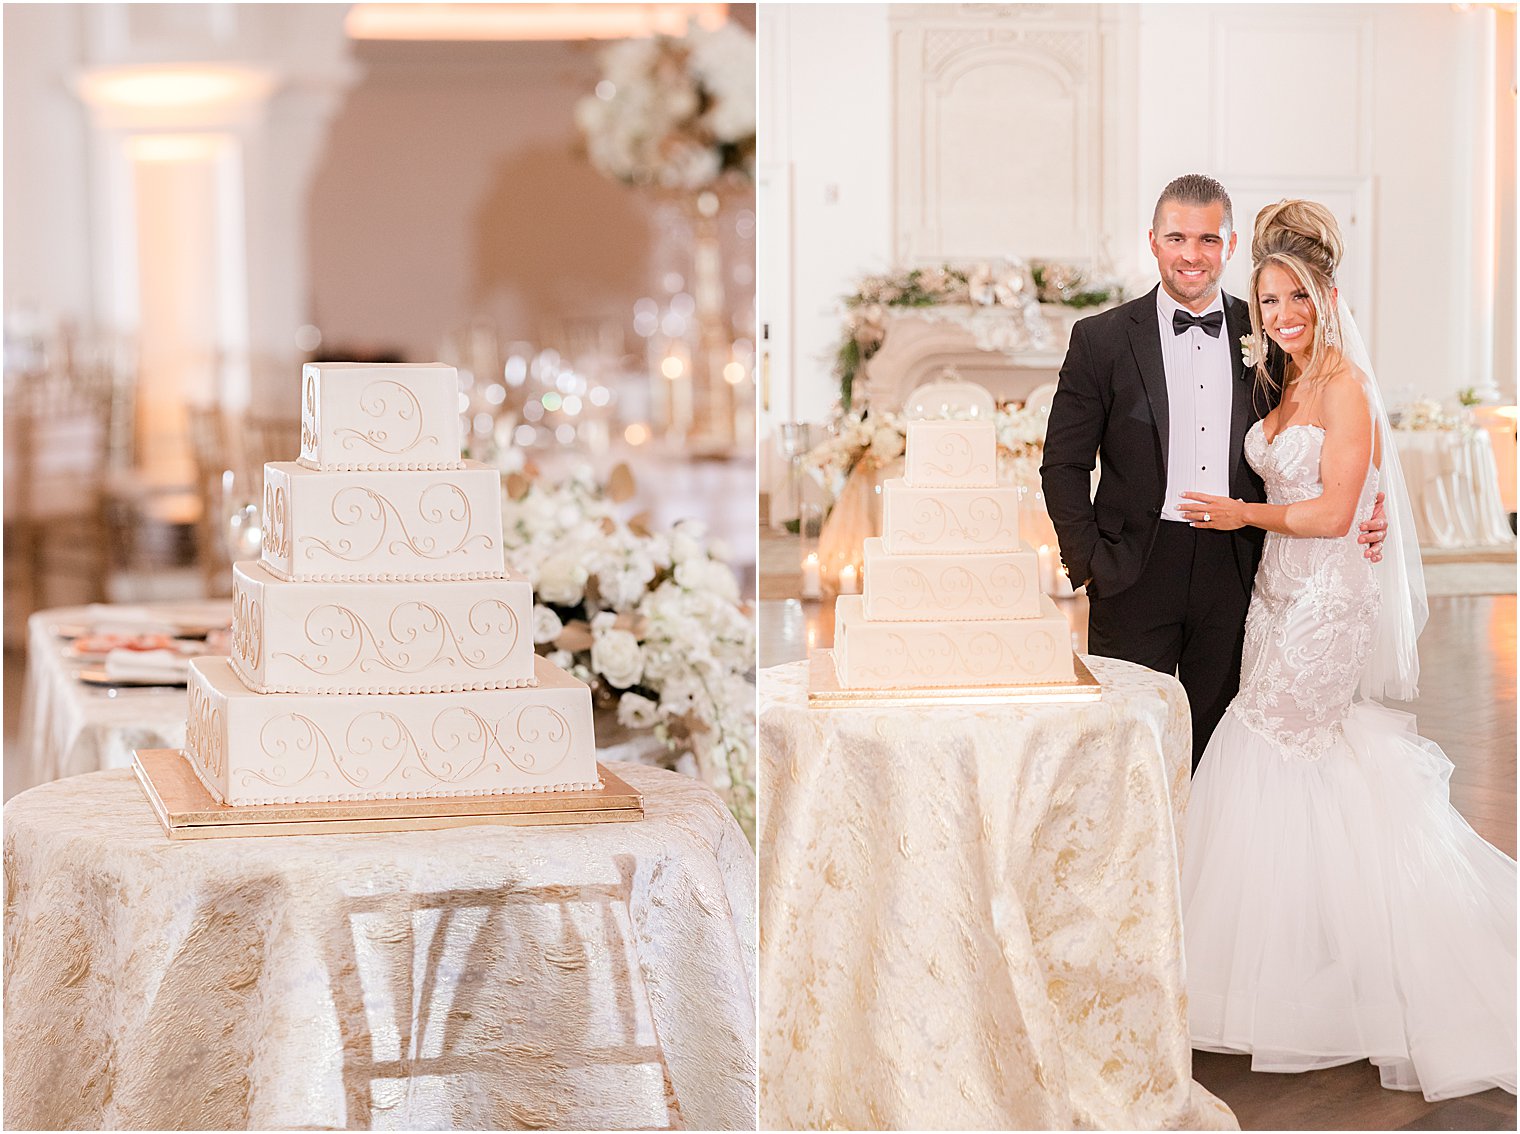 newlyweds pose by wedding cake during East Brunswick NJ wedding reception